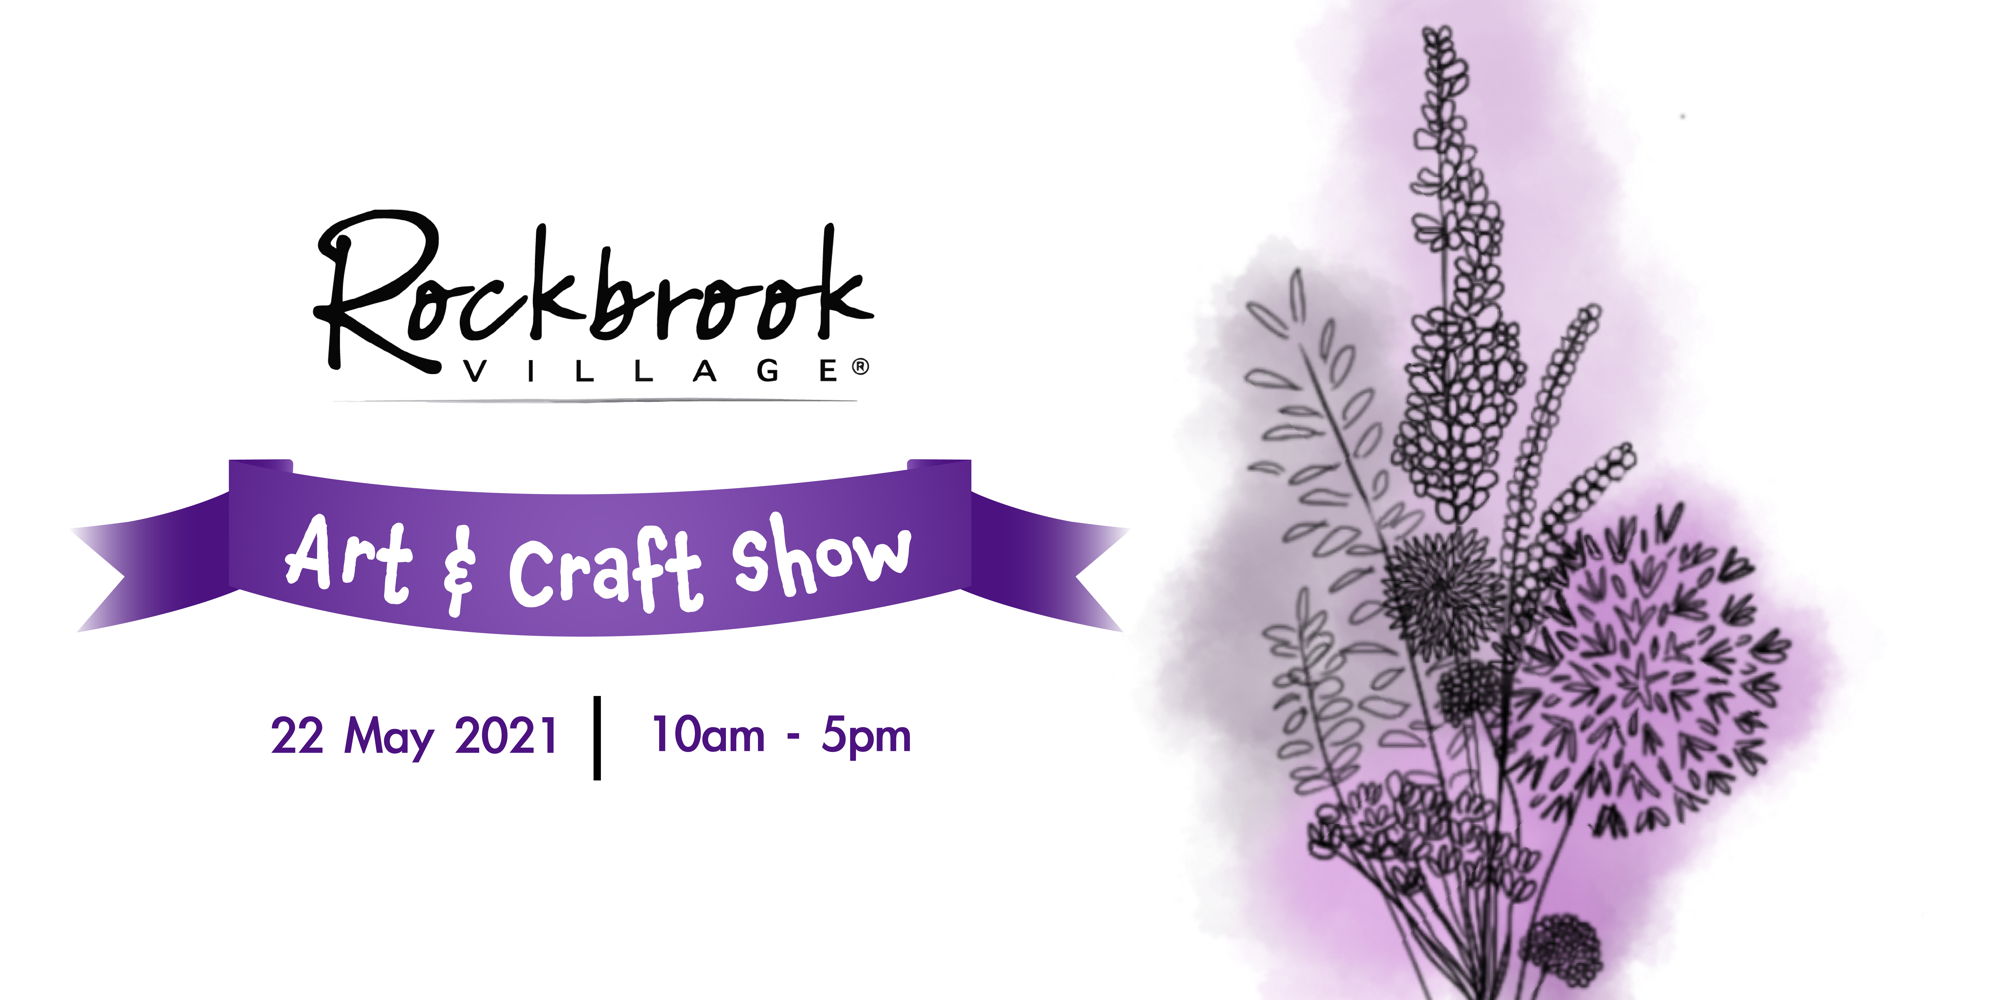 Rockbrook Village Art & Craft Show promotional image